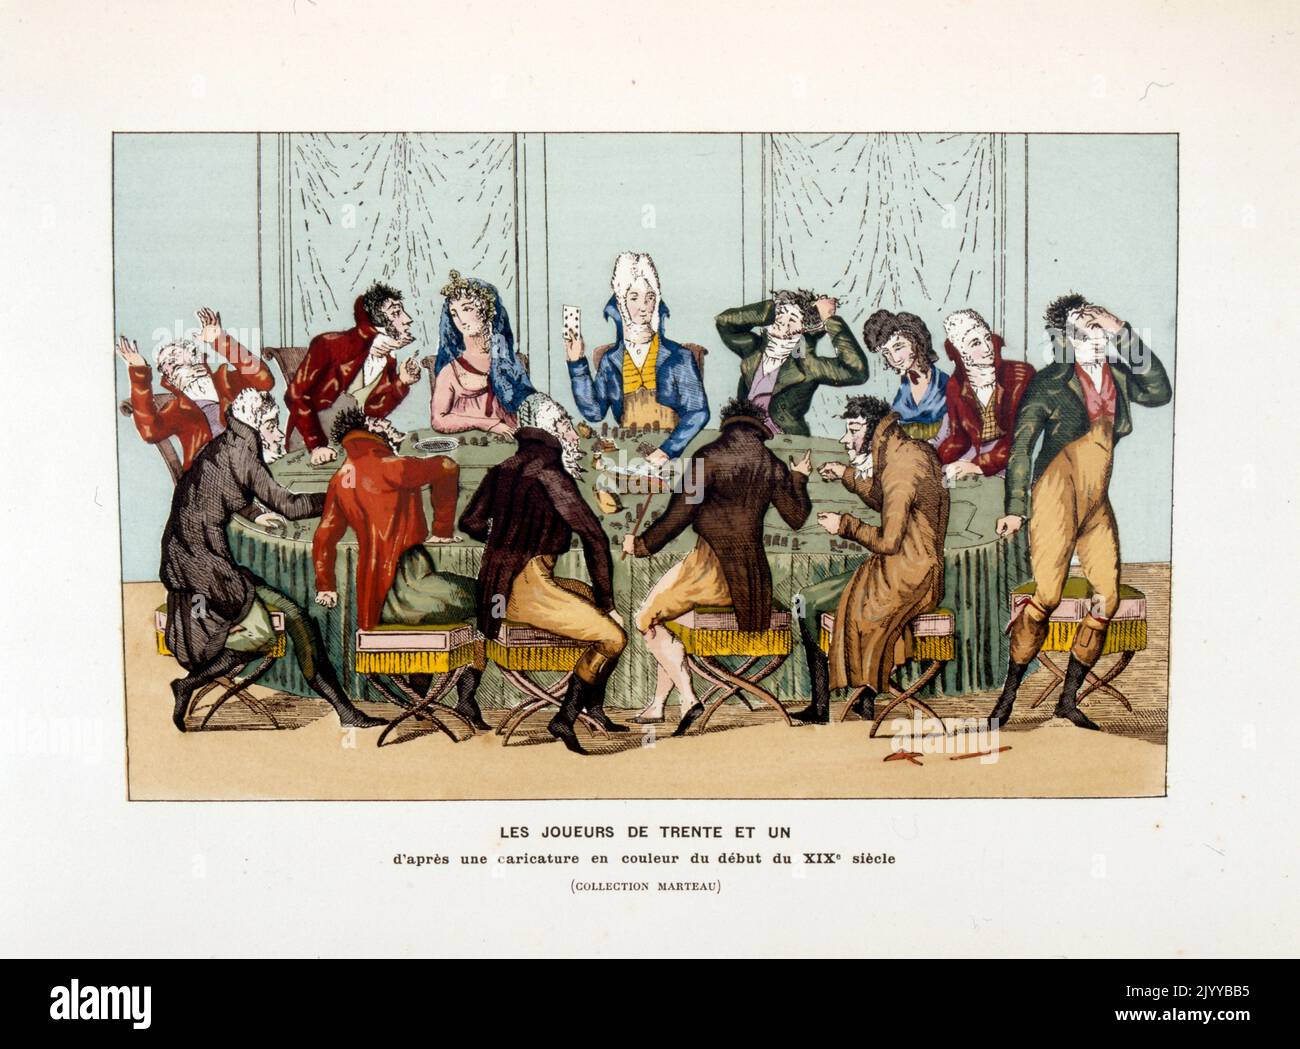 Farbige Illustration von Männern an einem Tisch, die das Spiel von '31' spielen, inspiriert durch eine Karikatur in Farbe vom Anfang des 19.. Jahrhunderts. Stockfoto